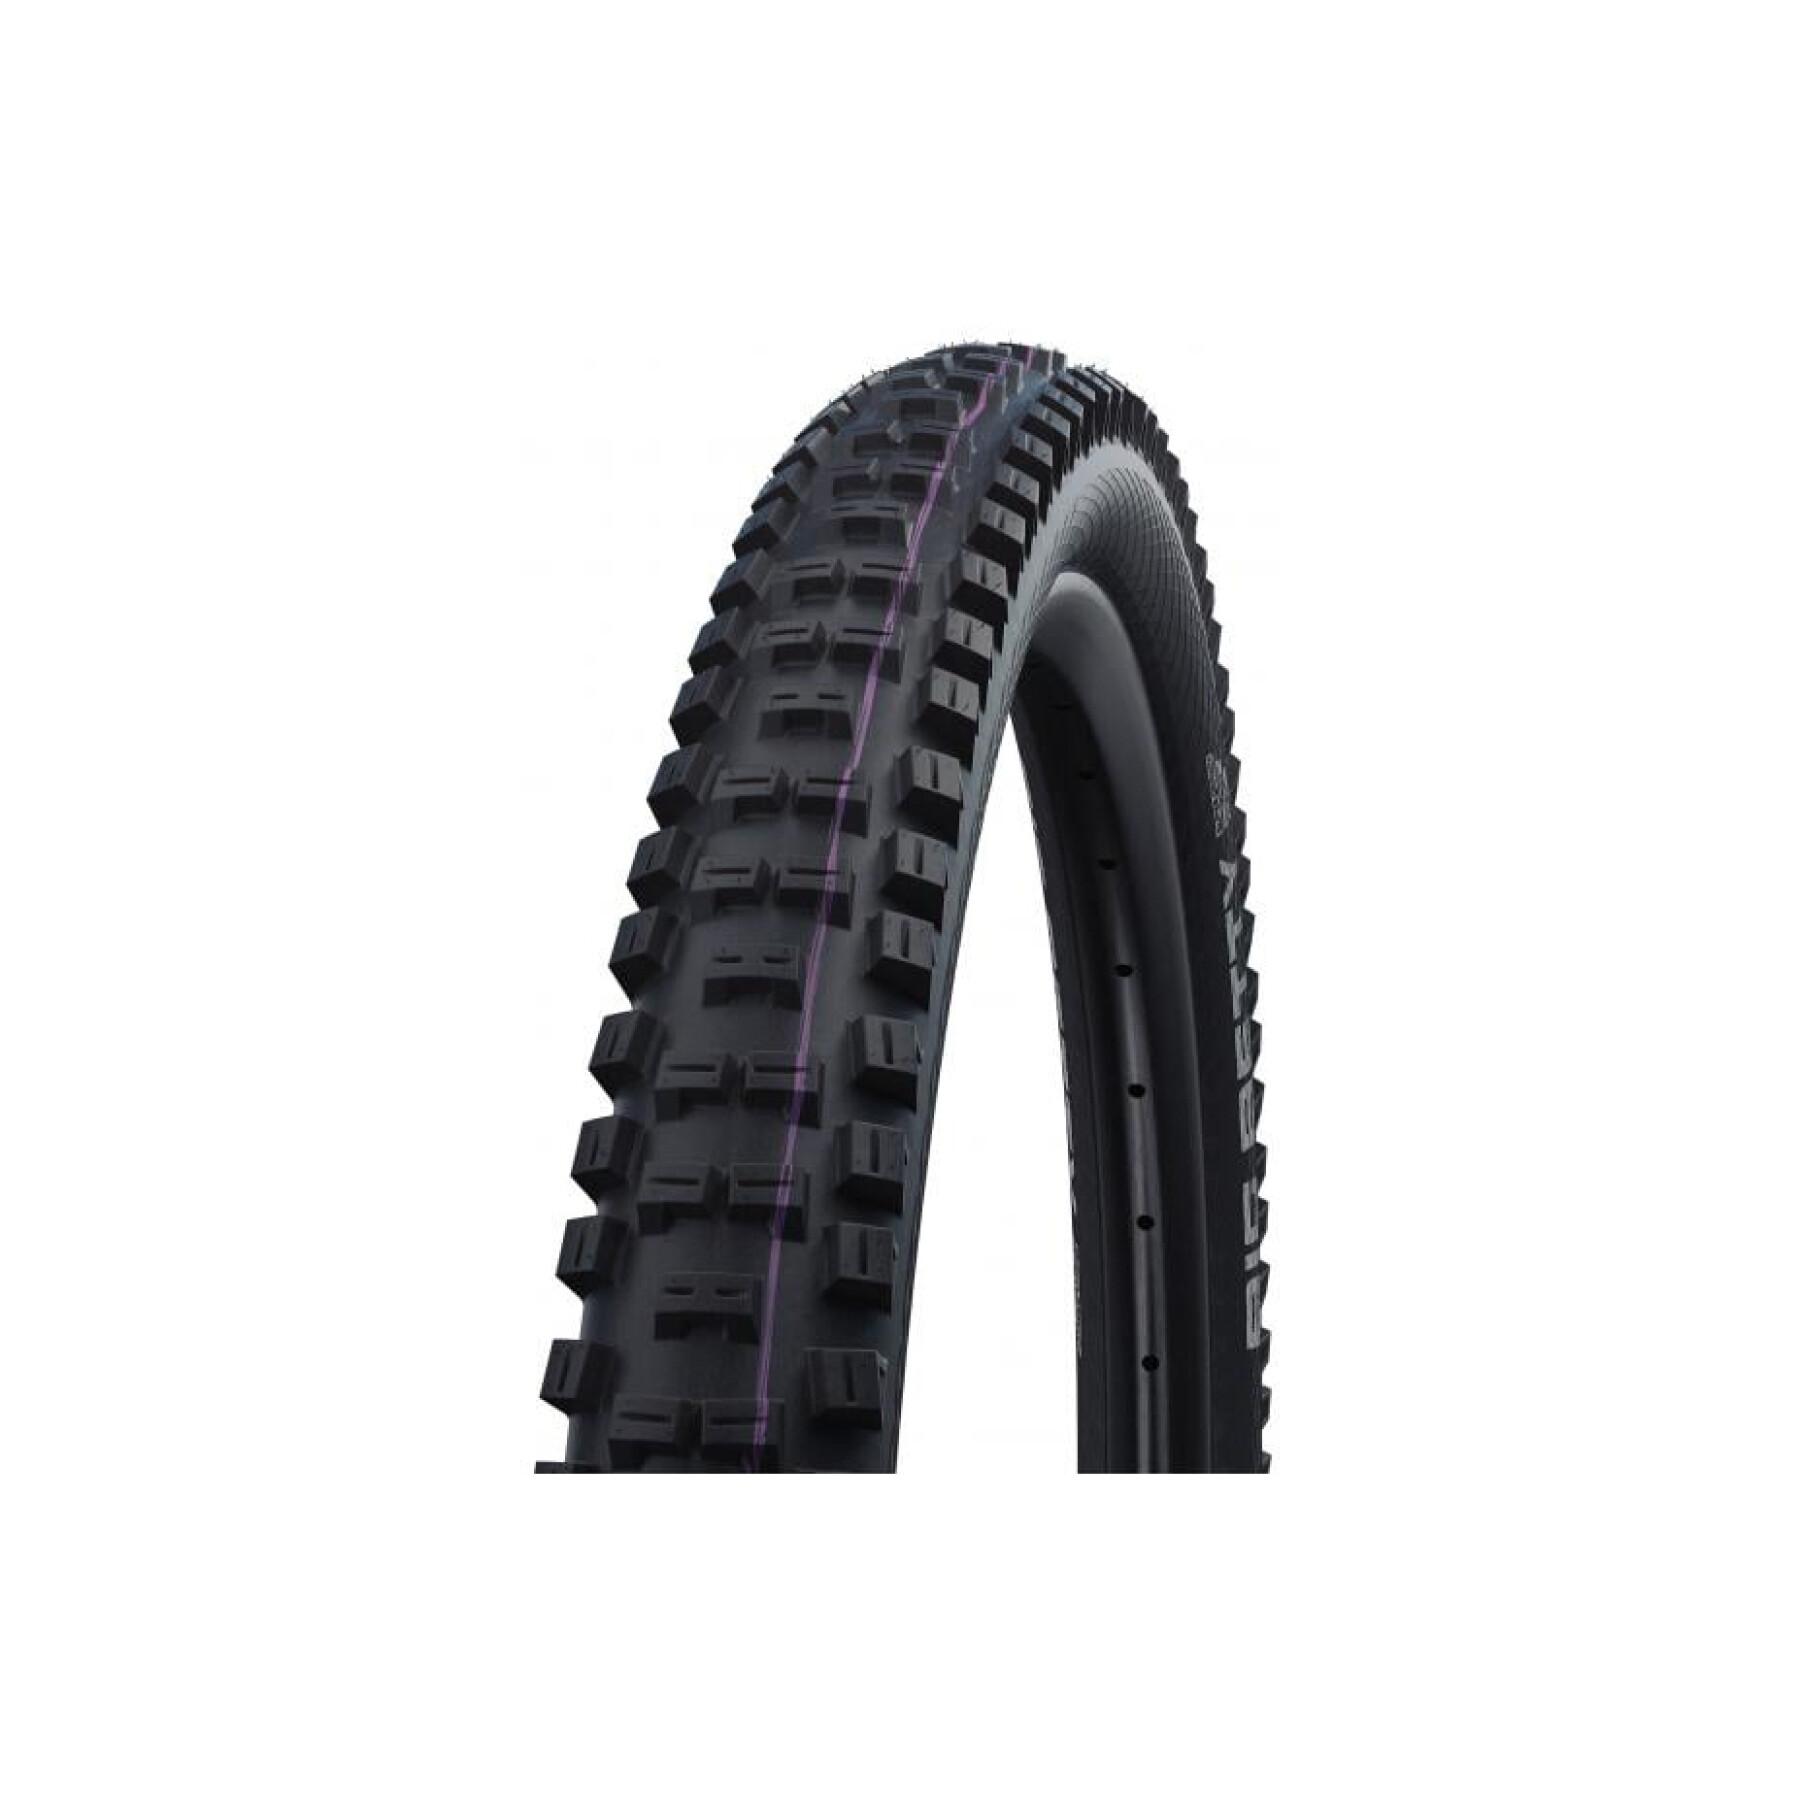 Neumático blando Schwalbe Big Betty 27,5x2,40 Hs608 Evo Super Downhill Addix Ult Tubeless